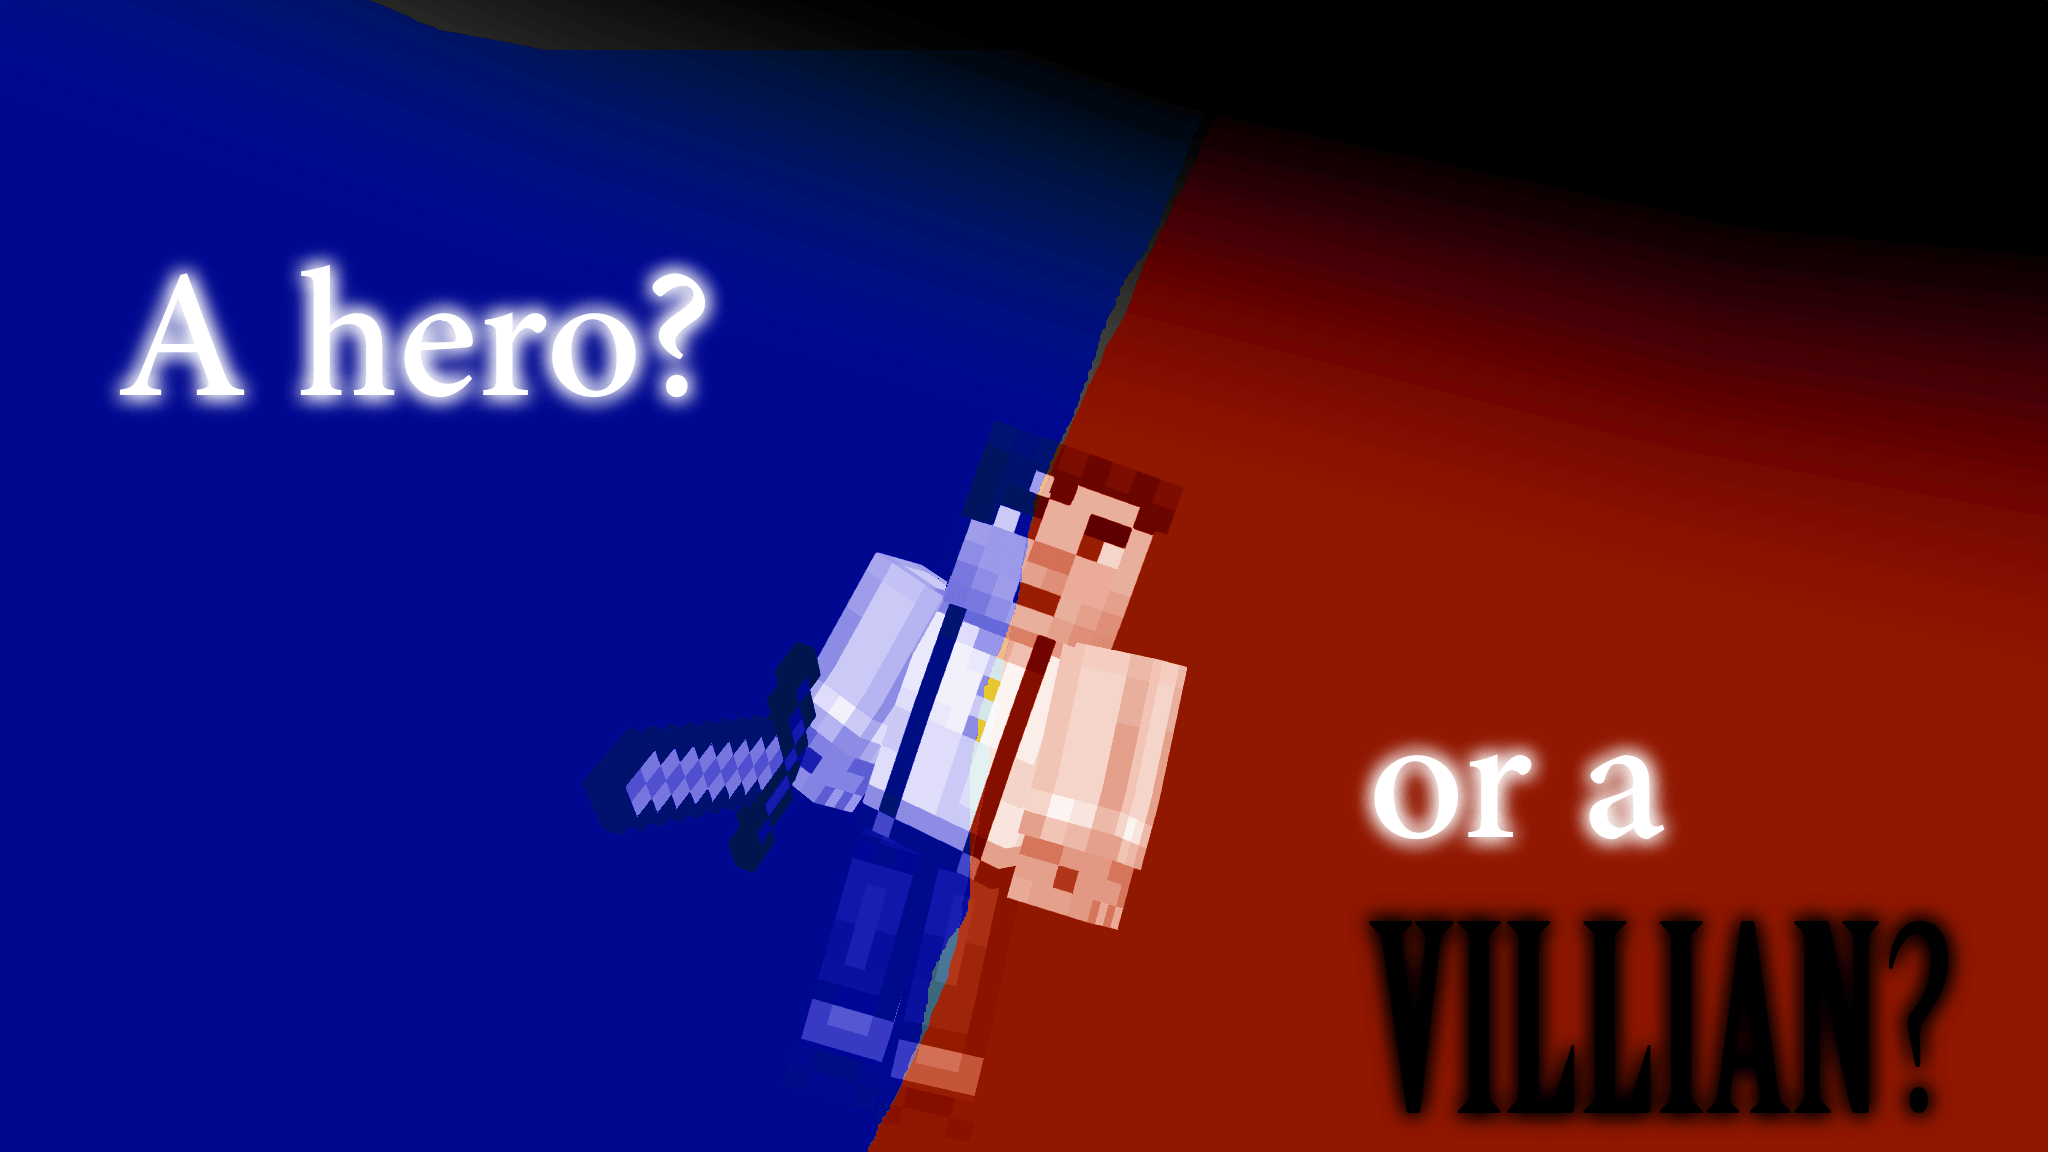 Minecraft: Story Mode Wallpaper: A Hero? or a VILLIAN